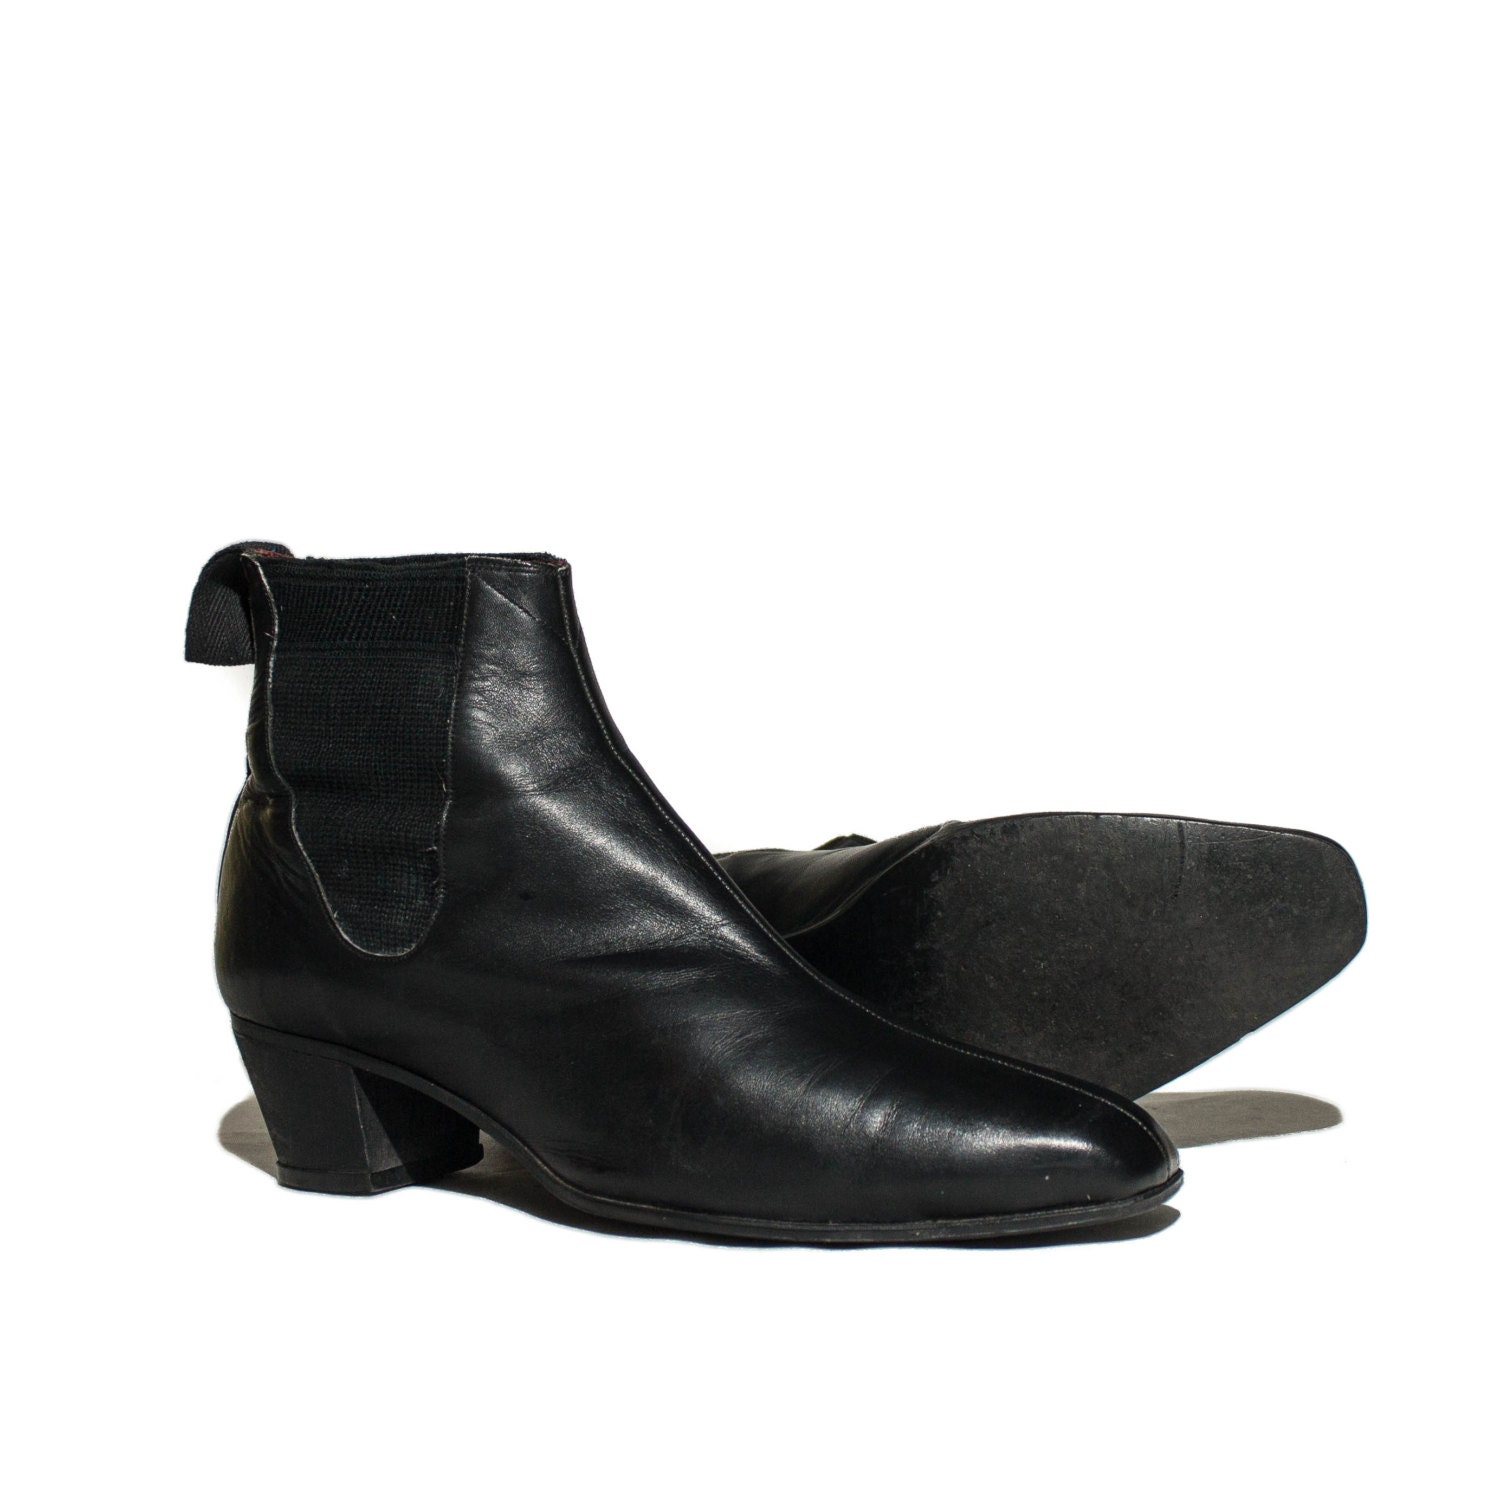 Vintage Anello & Davide Beatle Boots Black Leather Chelsea